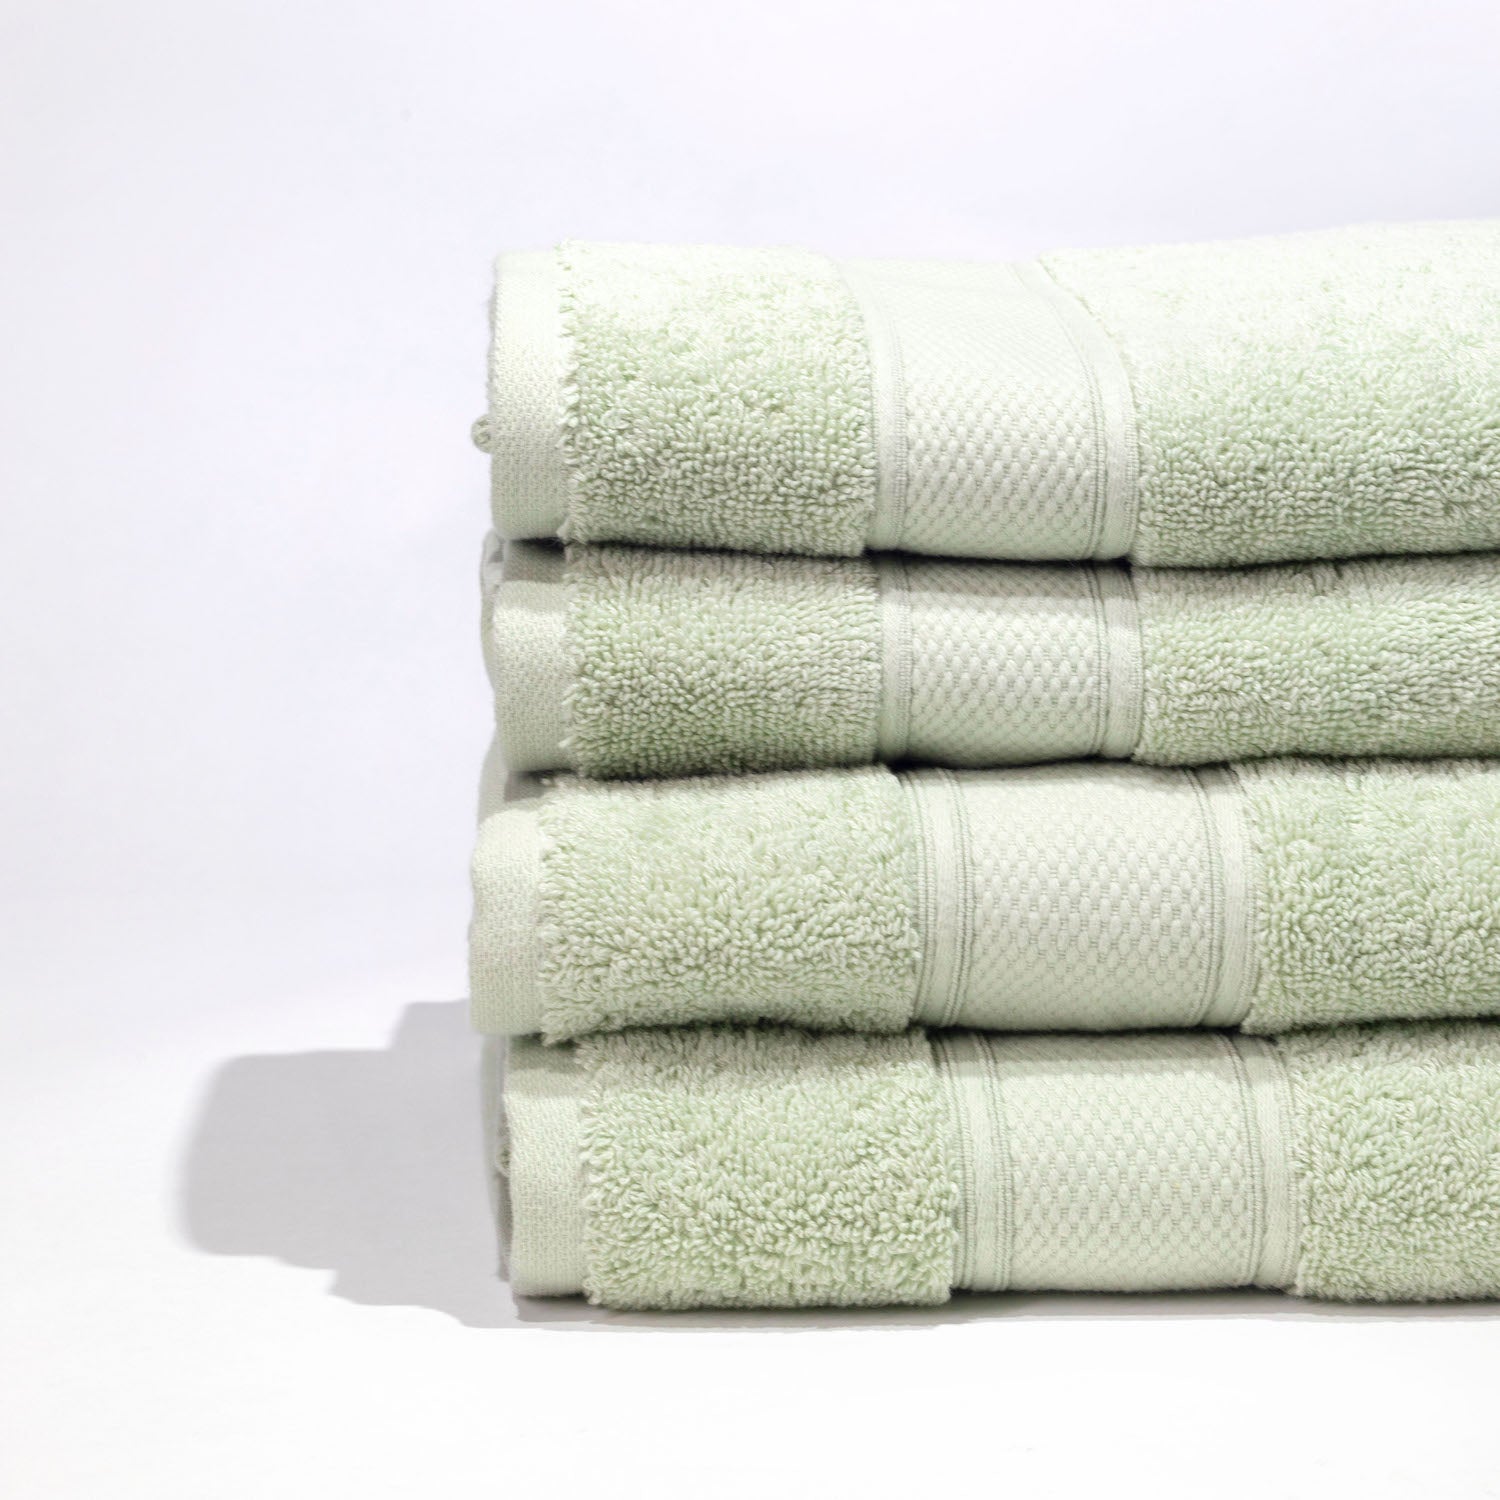 Pinehurst Bath Towel Starter Package